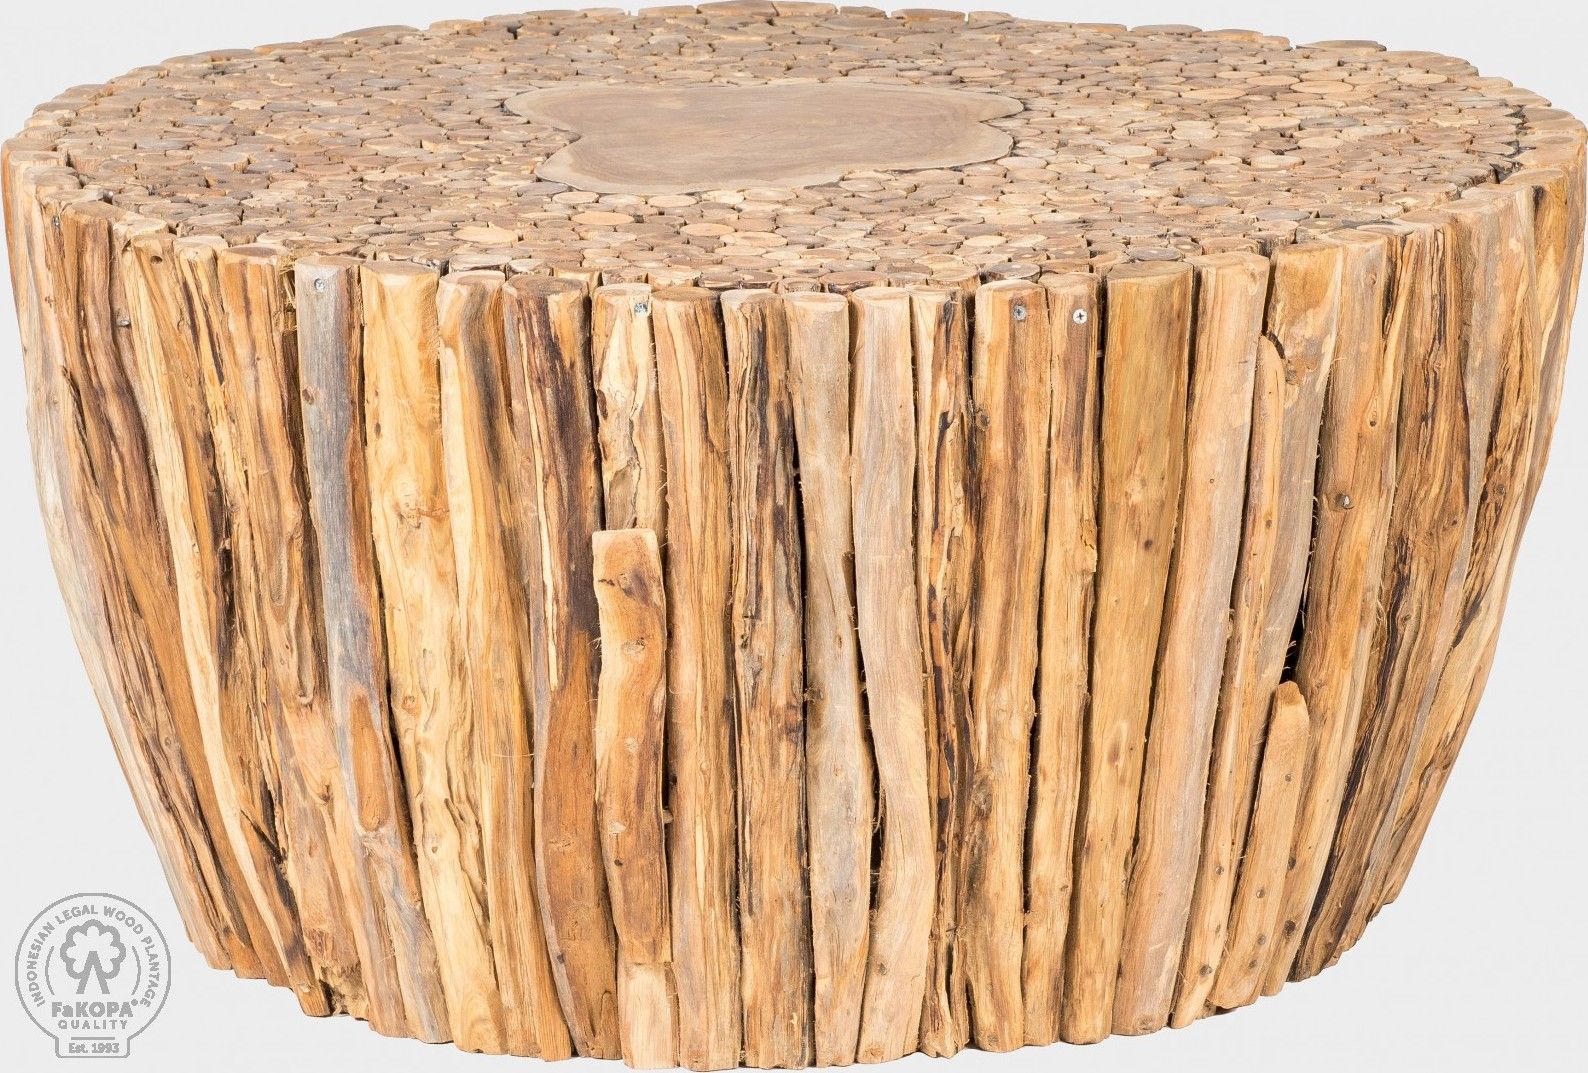 FaKOPA Originální stolek z jednoho kusu masivního dřeva Lily Mdum - M DUM.cz